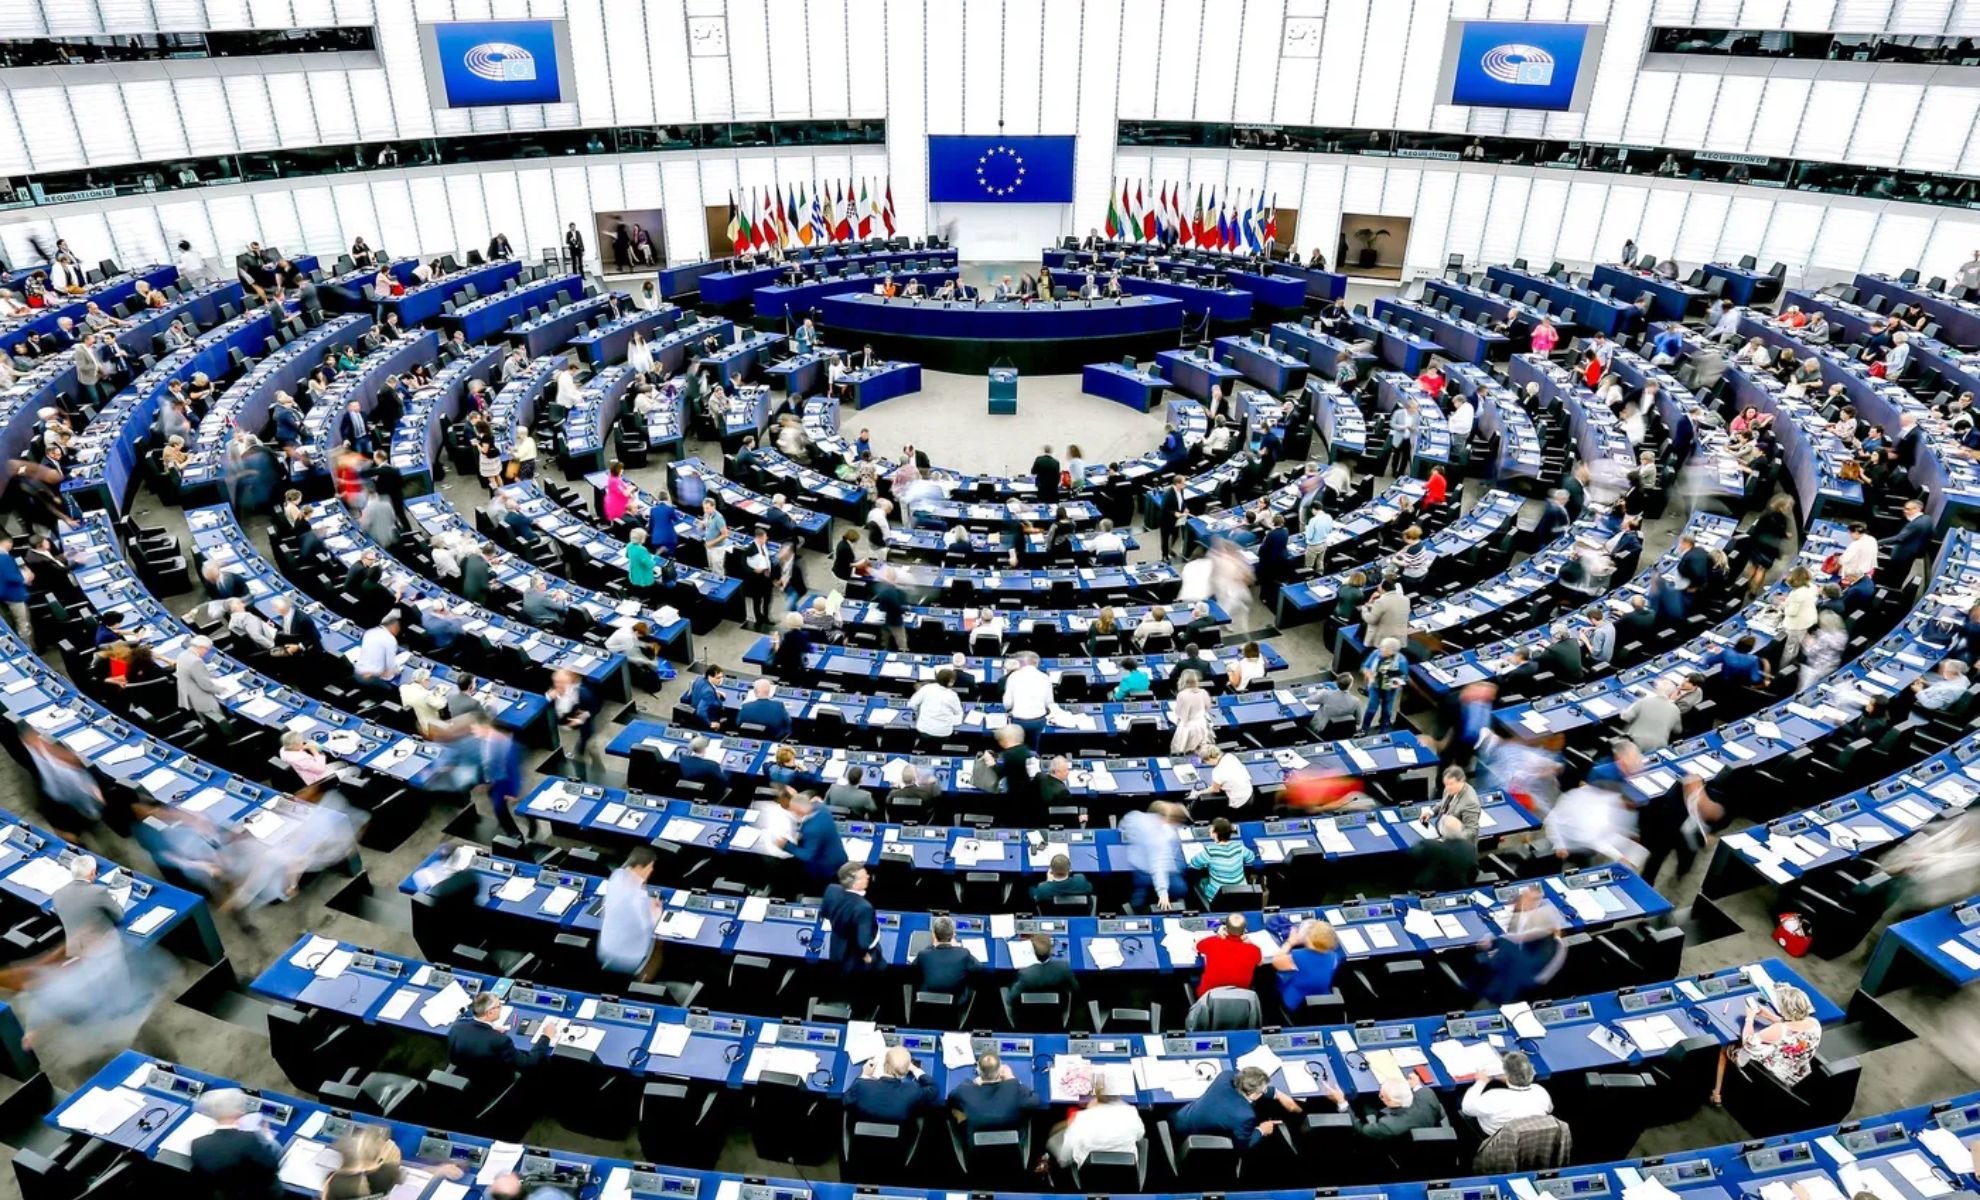 Parlement européen - Corruption - Maroc - Qatar